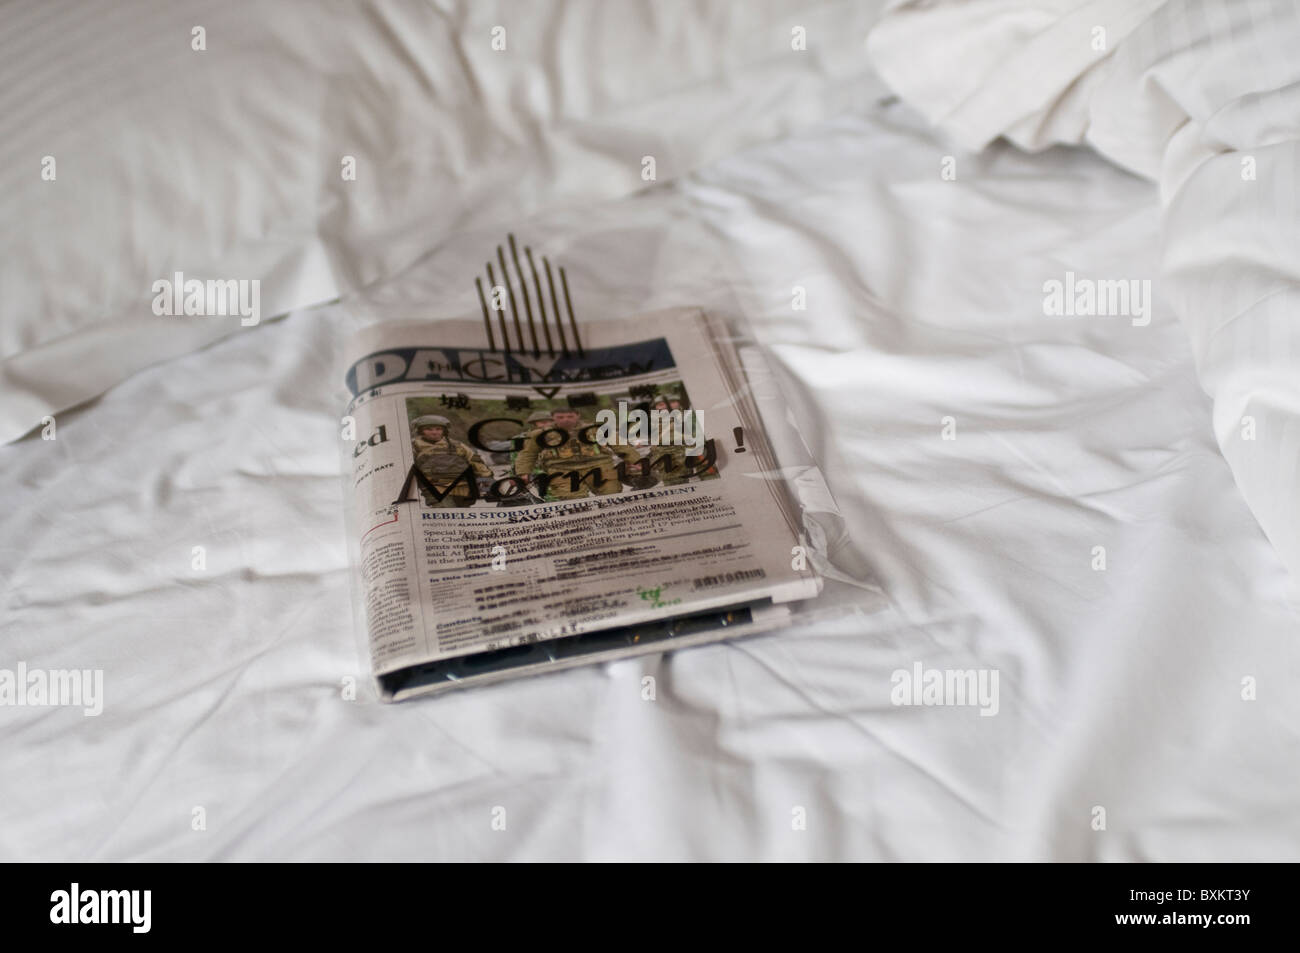 China Daily Journal dans un bon matin sac en plastique dans une chambre d'hôtel, Hong Kong Banque D'Images